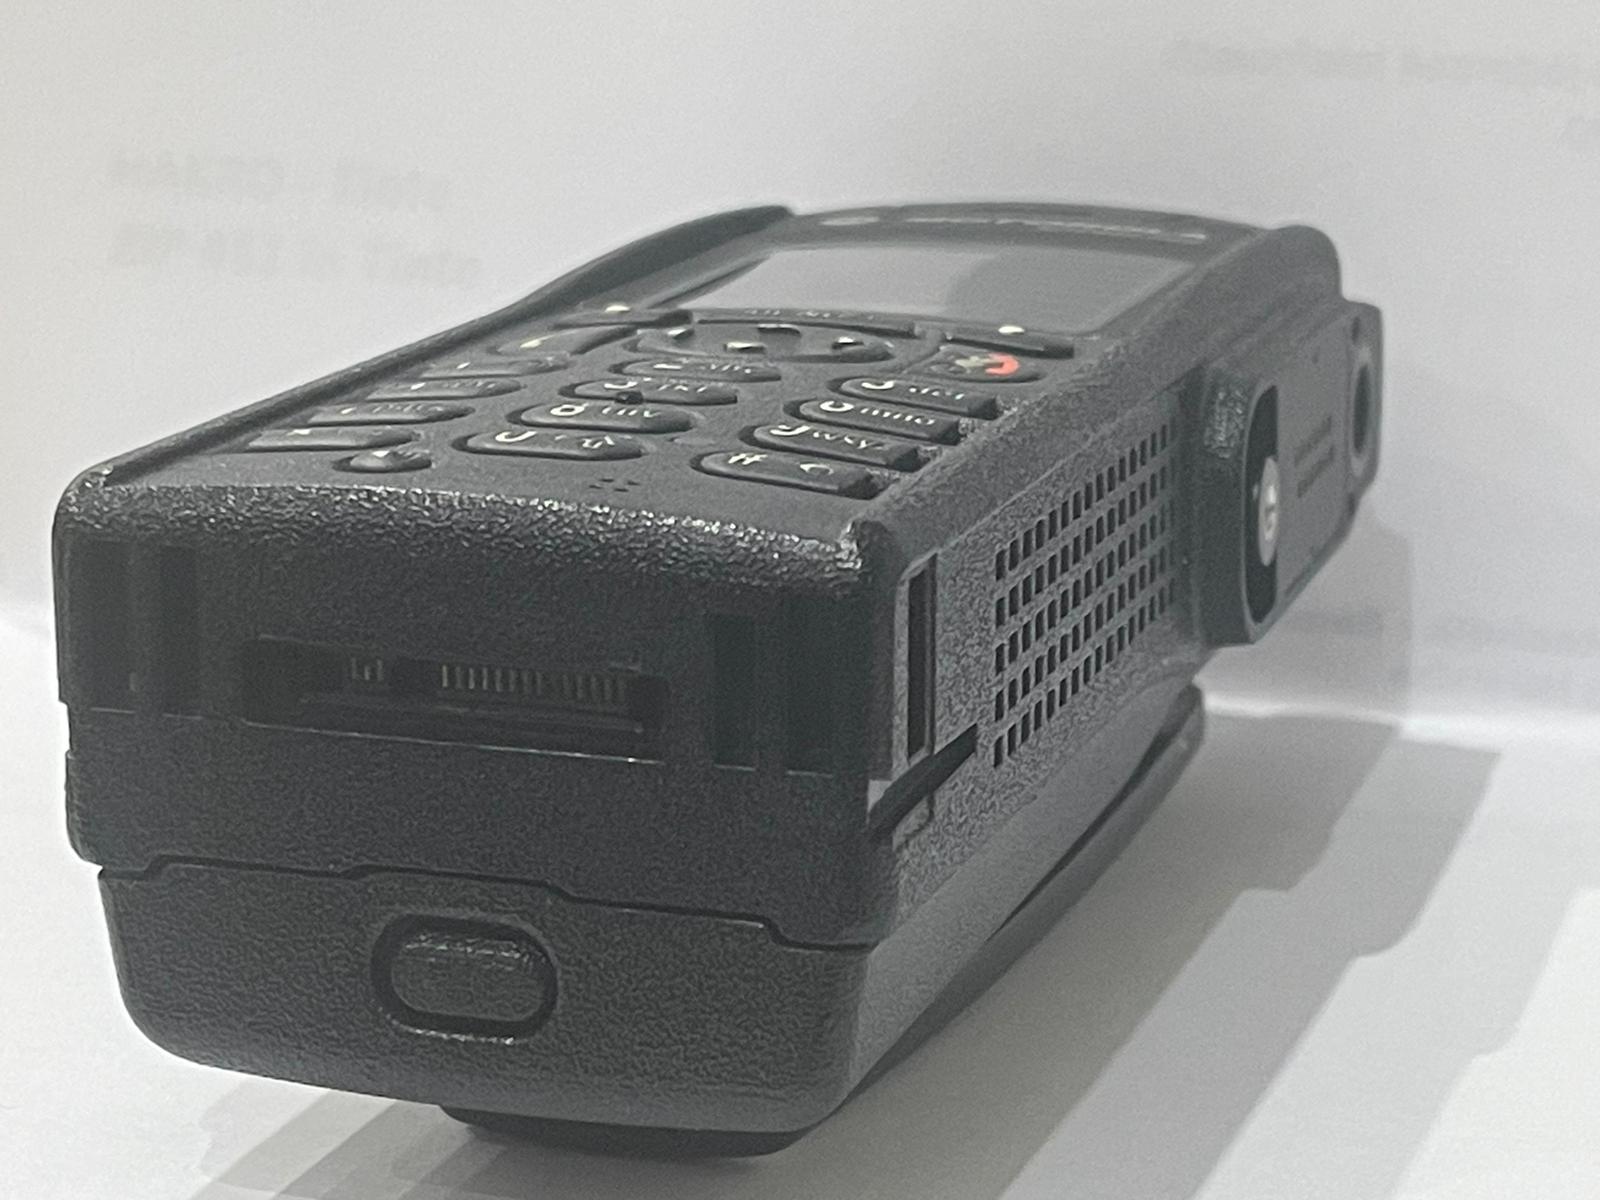 Reparatur Motorola MTP850 "Ladekontakt"